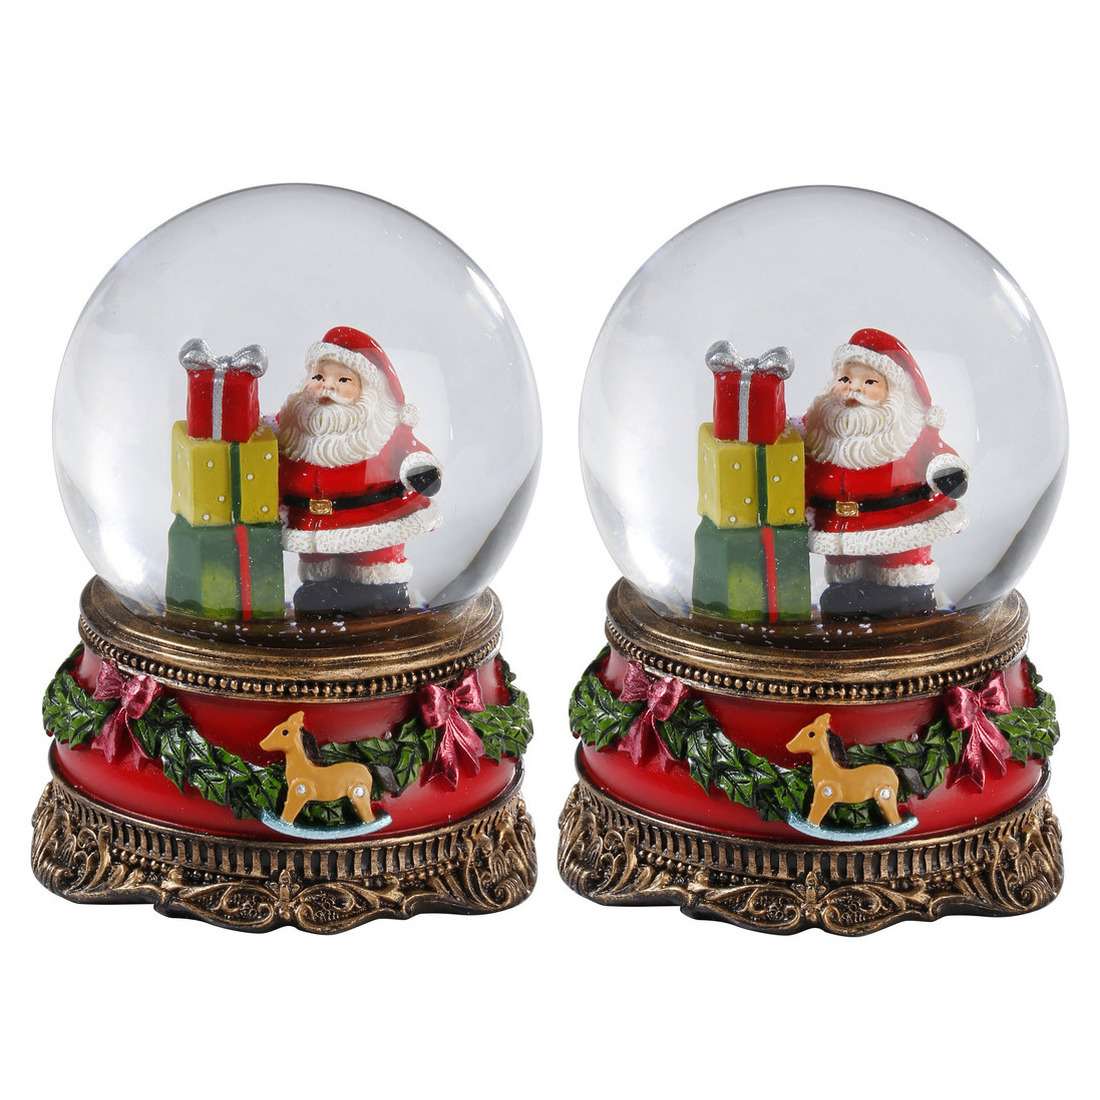 2x Sneeuwbollen/snowglobes kerstman met cadeaus 9 cm